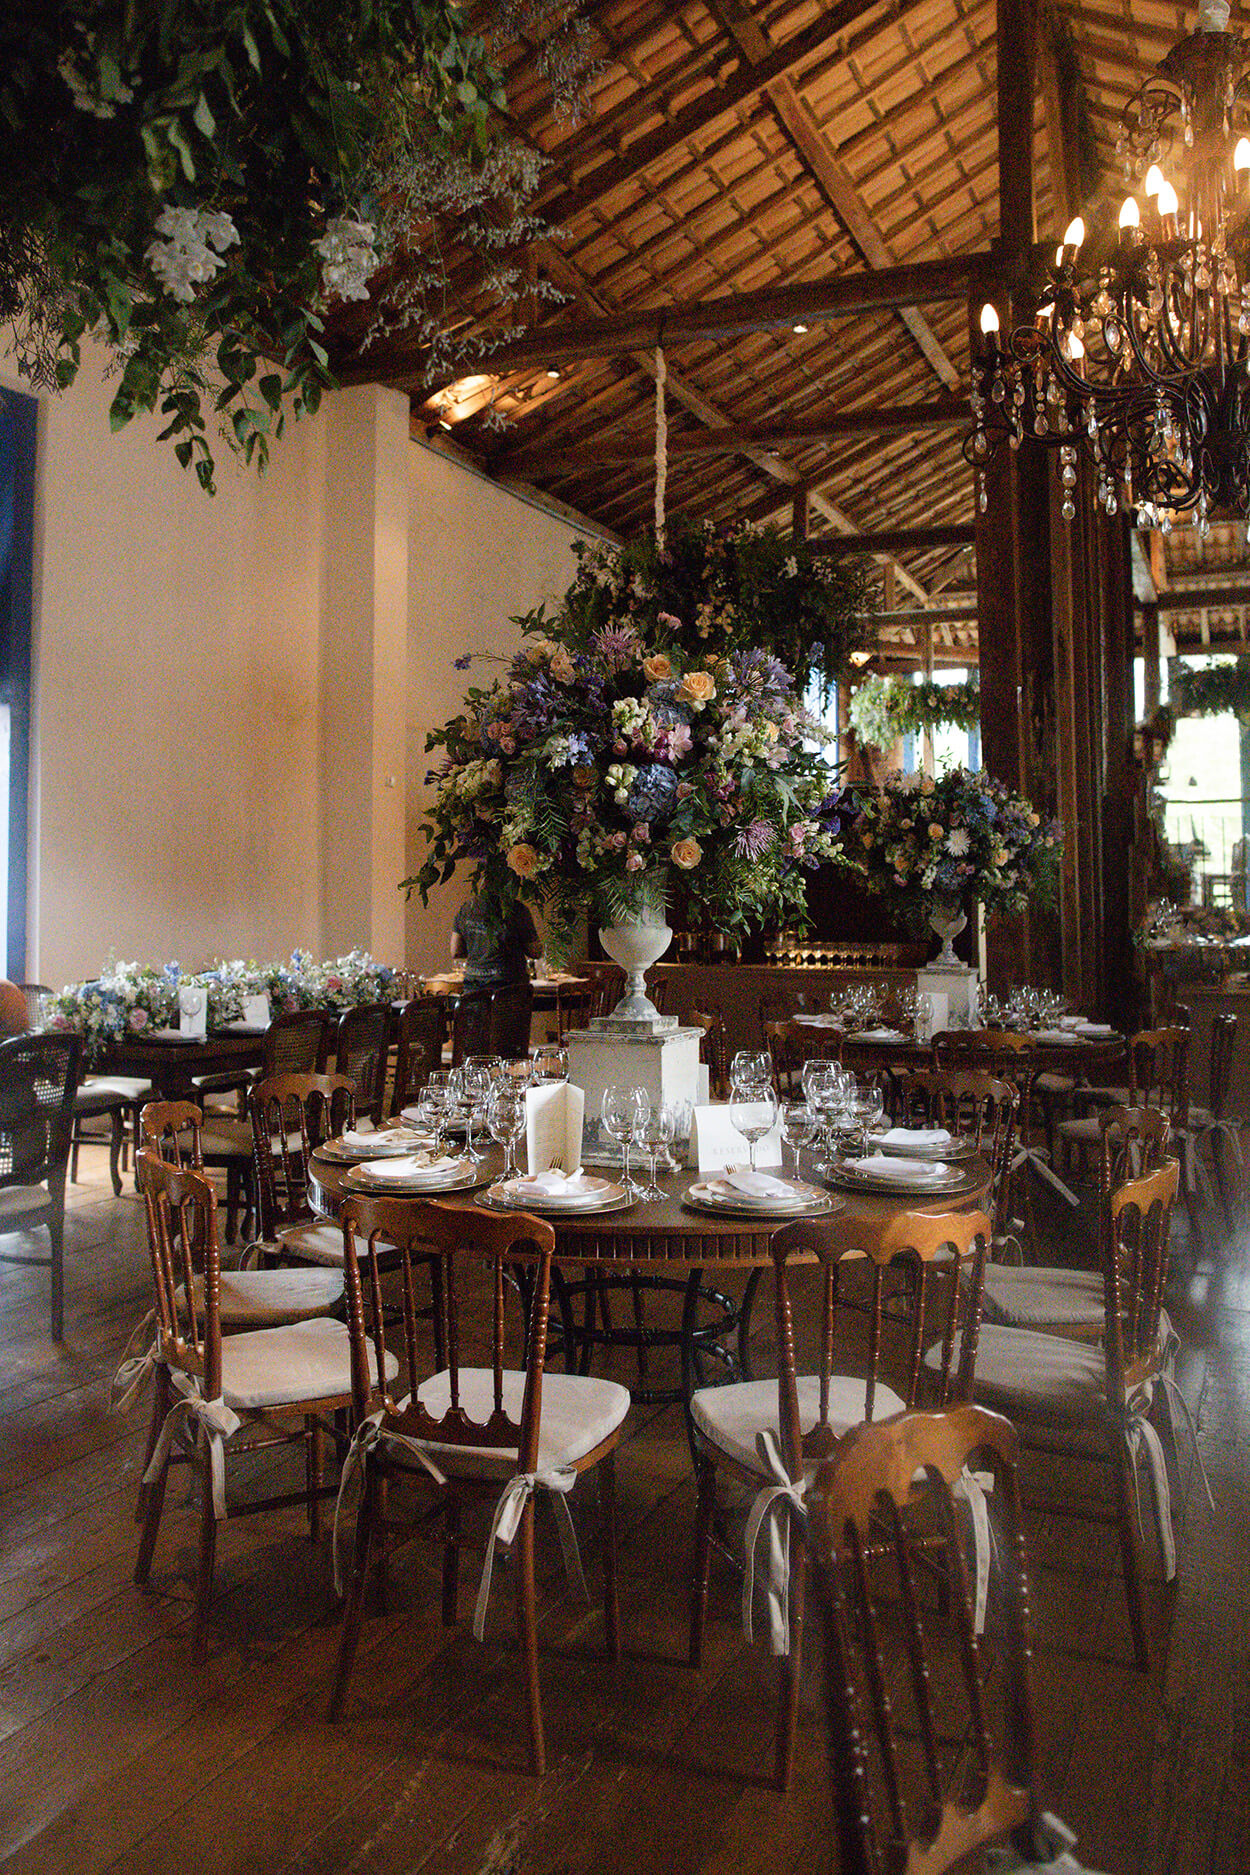 Salao rustico com mesas de madeira redonda com vasos com flores coloridas